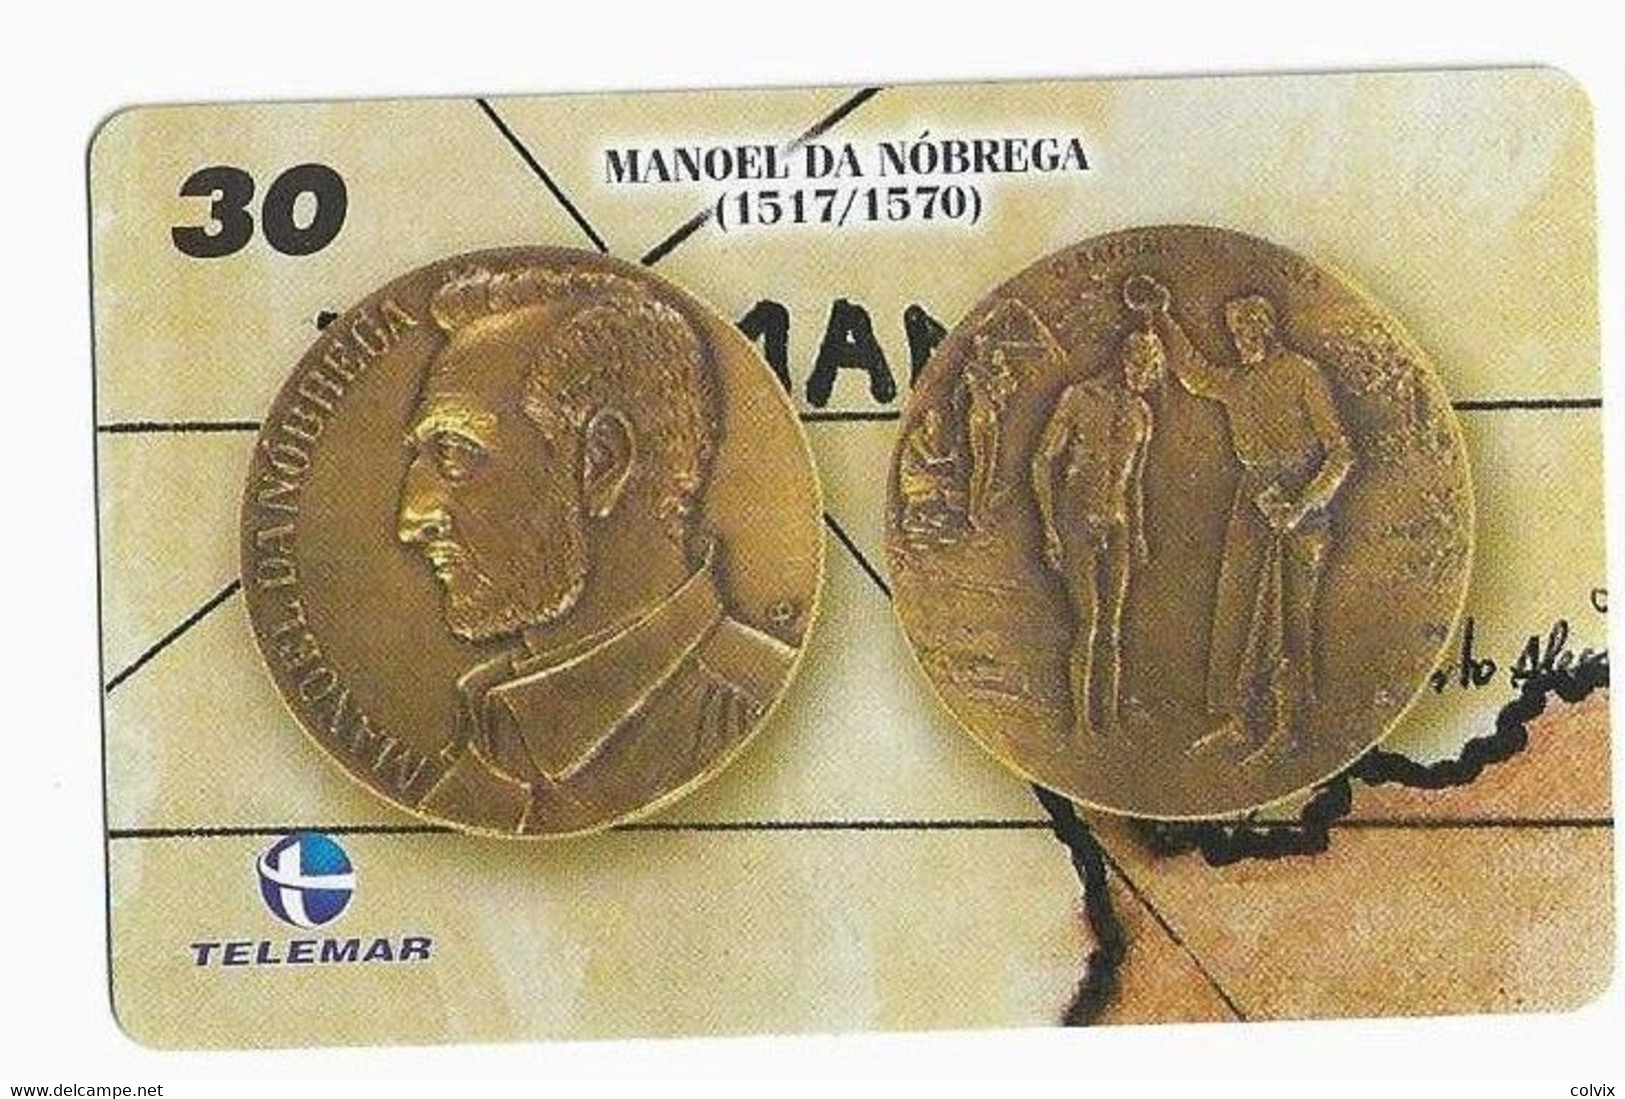 BRESIL TELECARTE MONNAIE MANOEL DA NOBREGA - Stamps & Coins